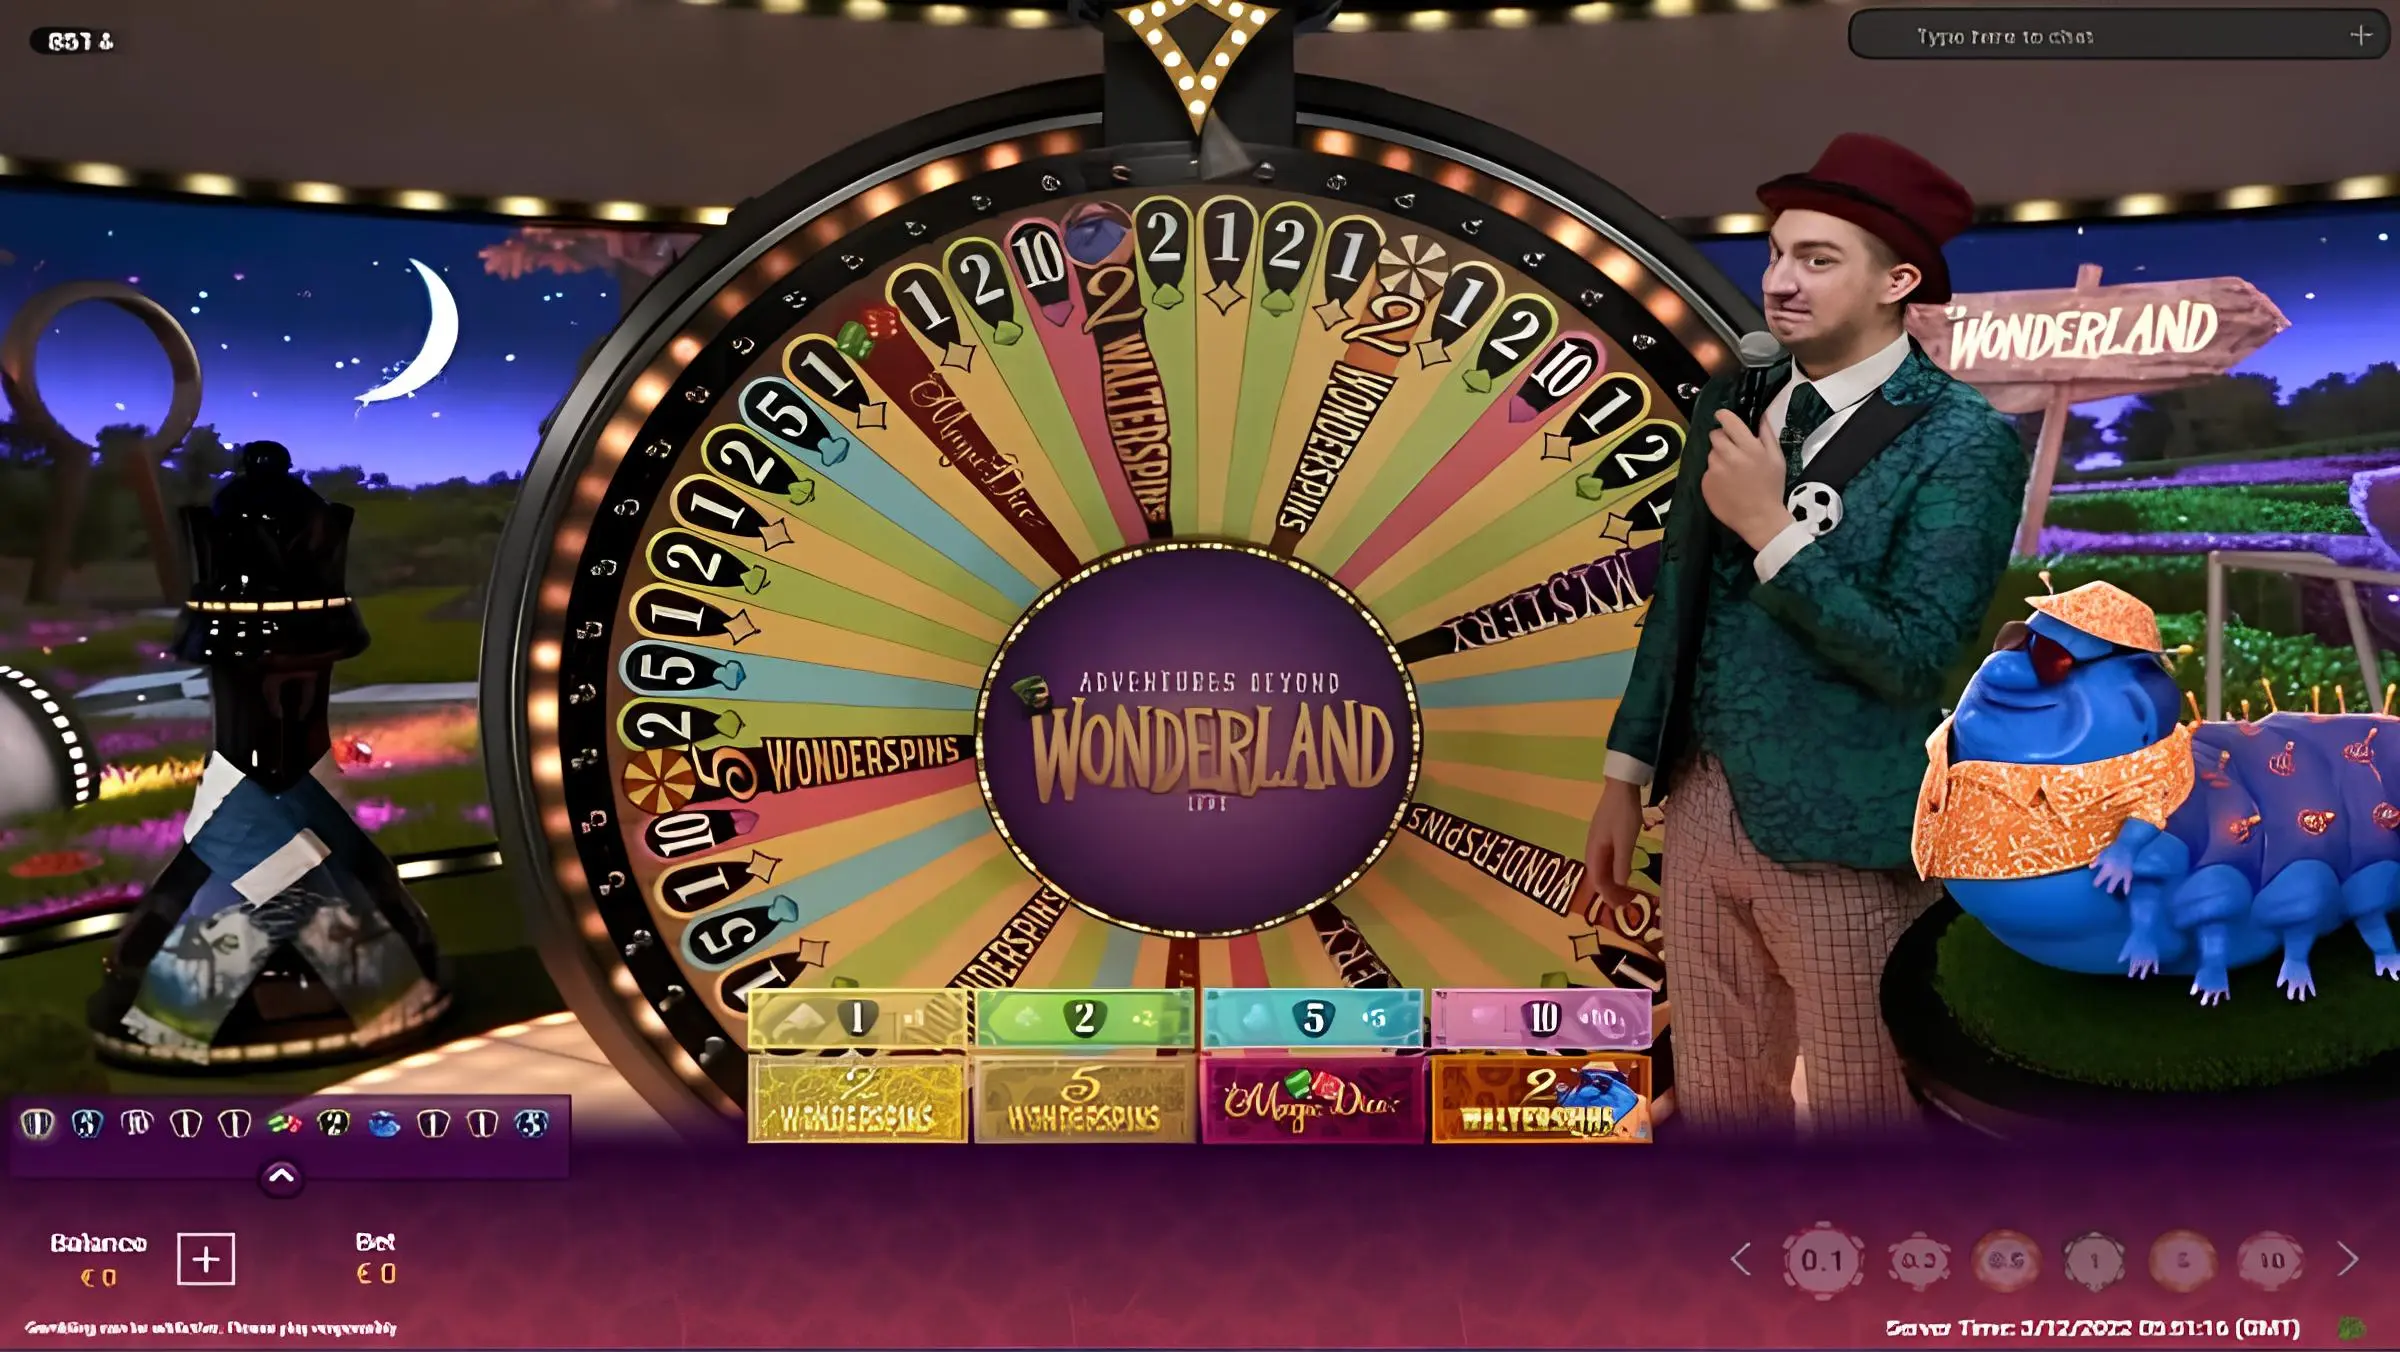 Adventures Beyond Wonderland: Descubra o emocionante jogo ao vivo